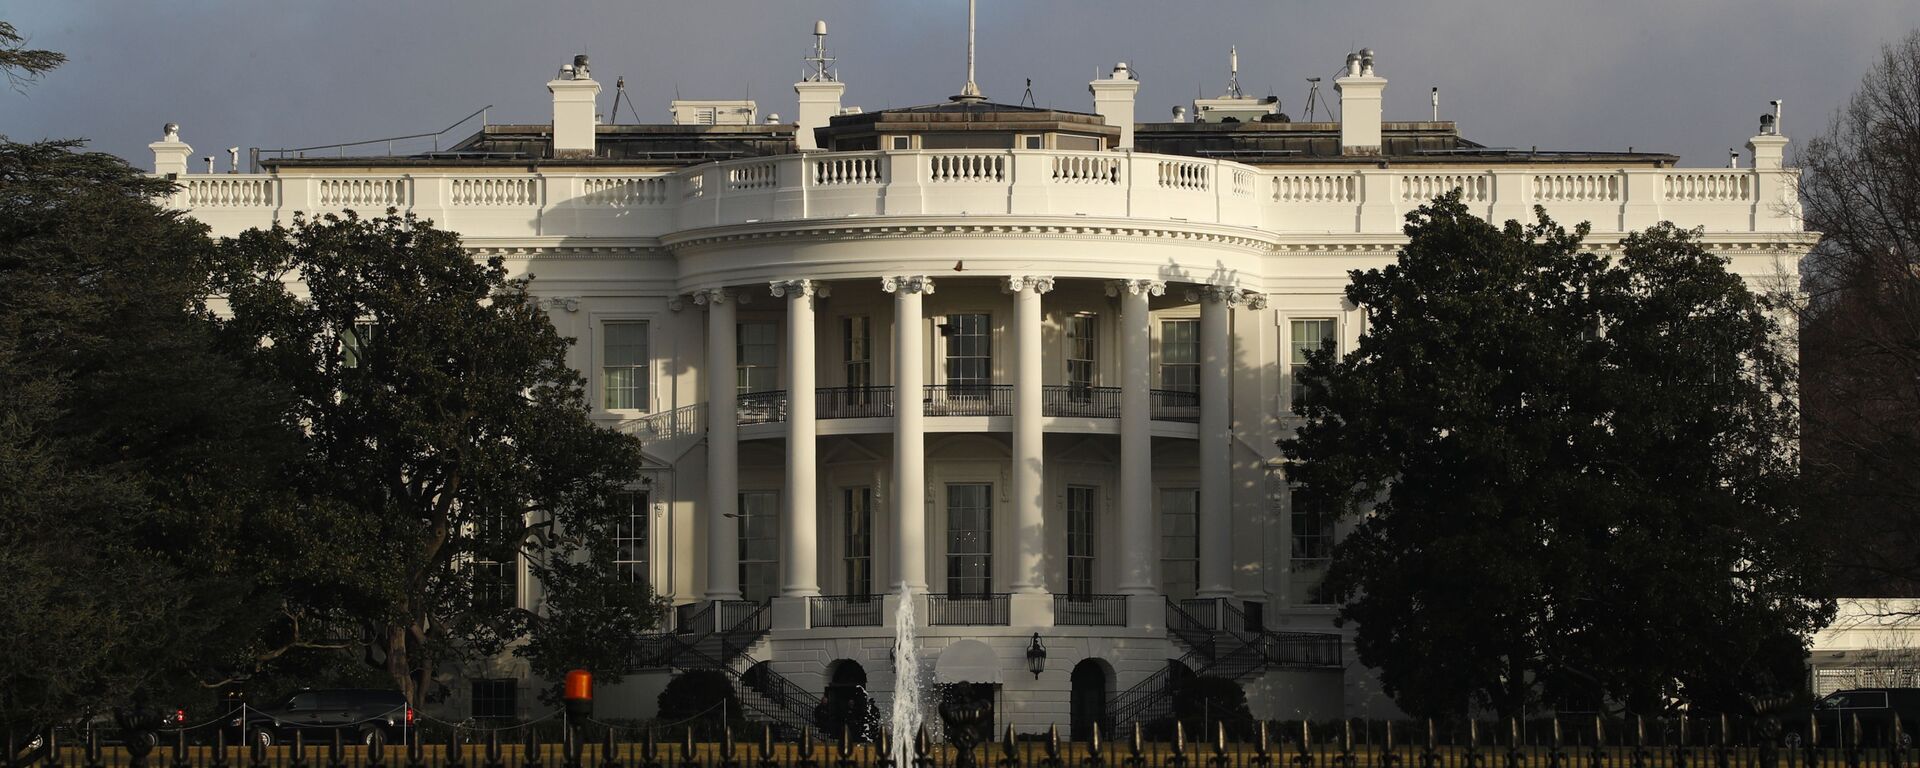 Официальная резиденция президента США - Белый дом - Sputnik Արմենիա, 1920, 18.03.2021